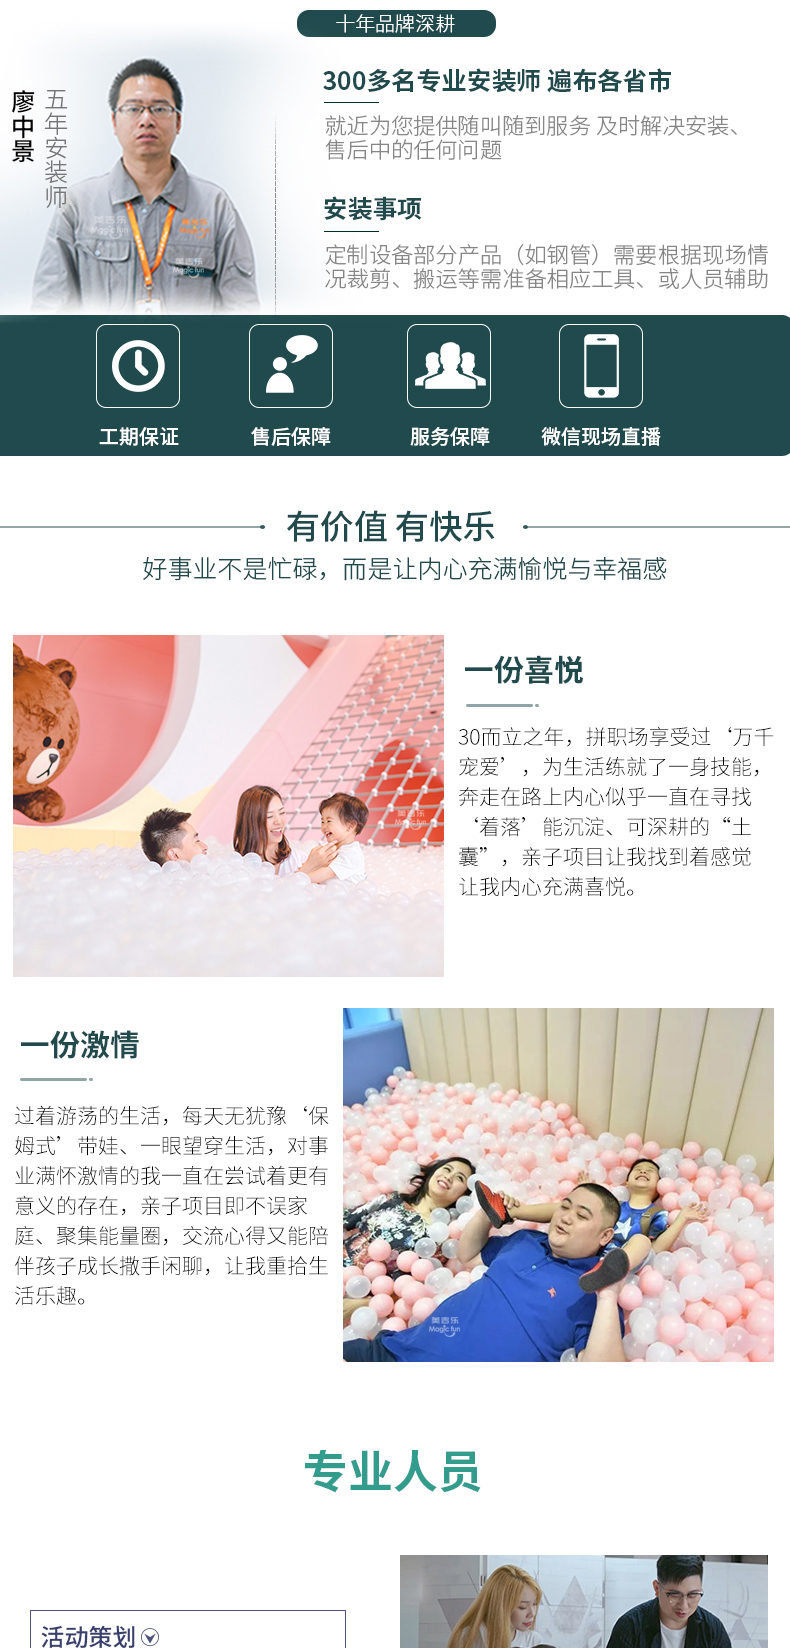 武汉游乐场室内设备 淘气堡儿童乐园 大型亲子餐厅 18